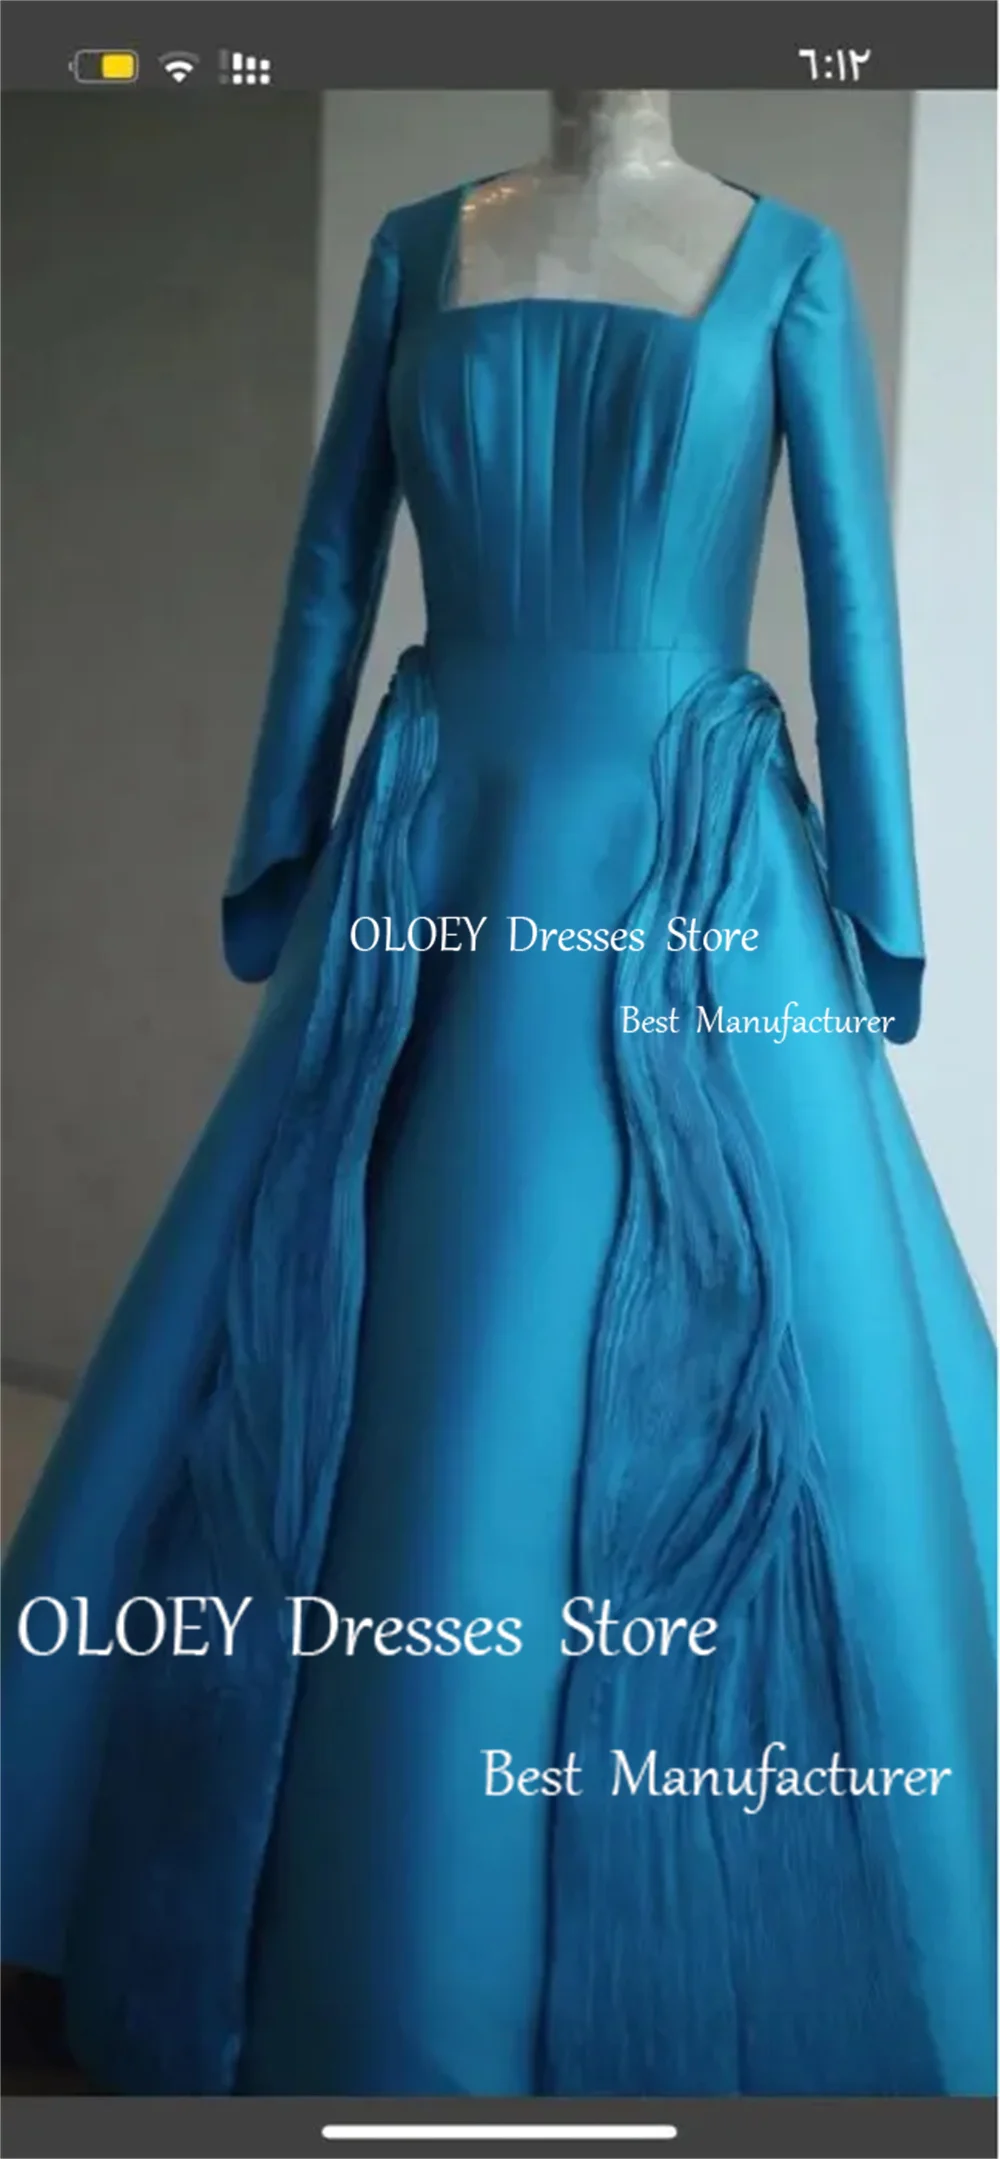 

OLOEY, современные синие вечерние платья с длинным рукавом и квадратным вырезом, плотные атласные платья Дубая, арабские официальные платья для выпускного вечера